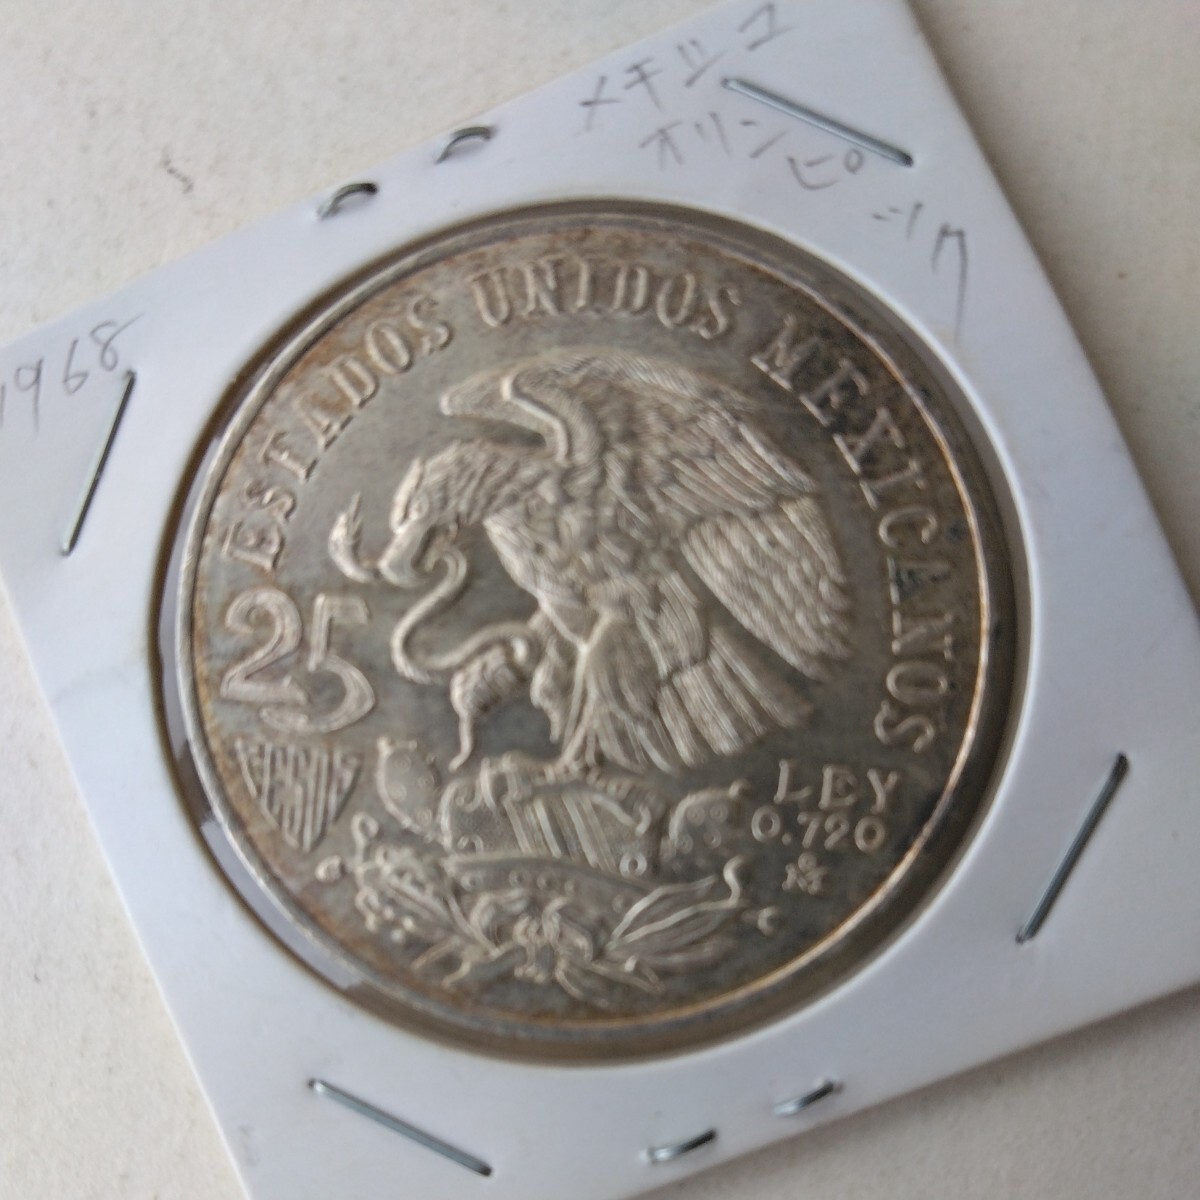 メキシコオリンピック記念銀貨です。長年しまって置いたメキシコオリンピック記念銀貨、綺麗です写真で、判断してください。の画像1